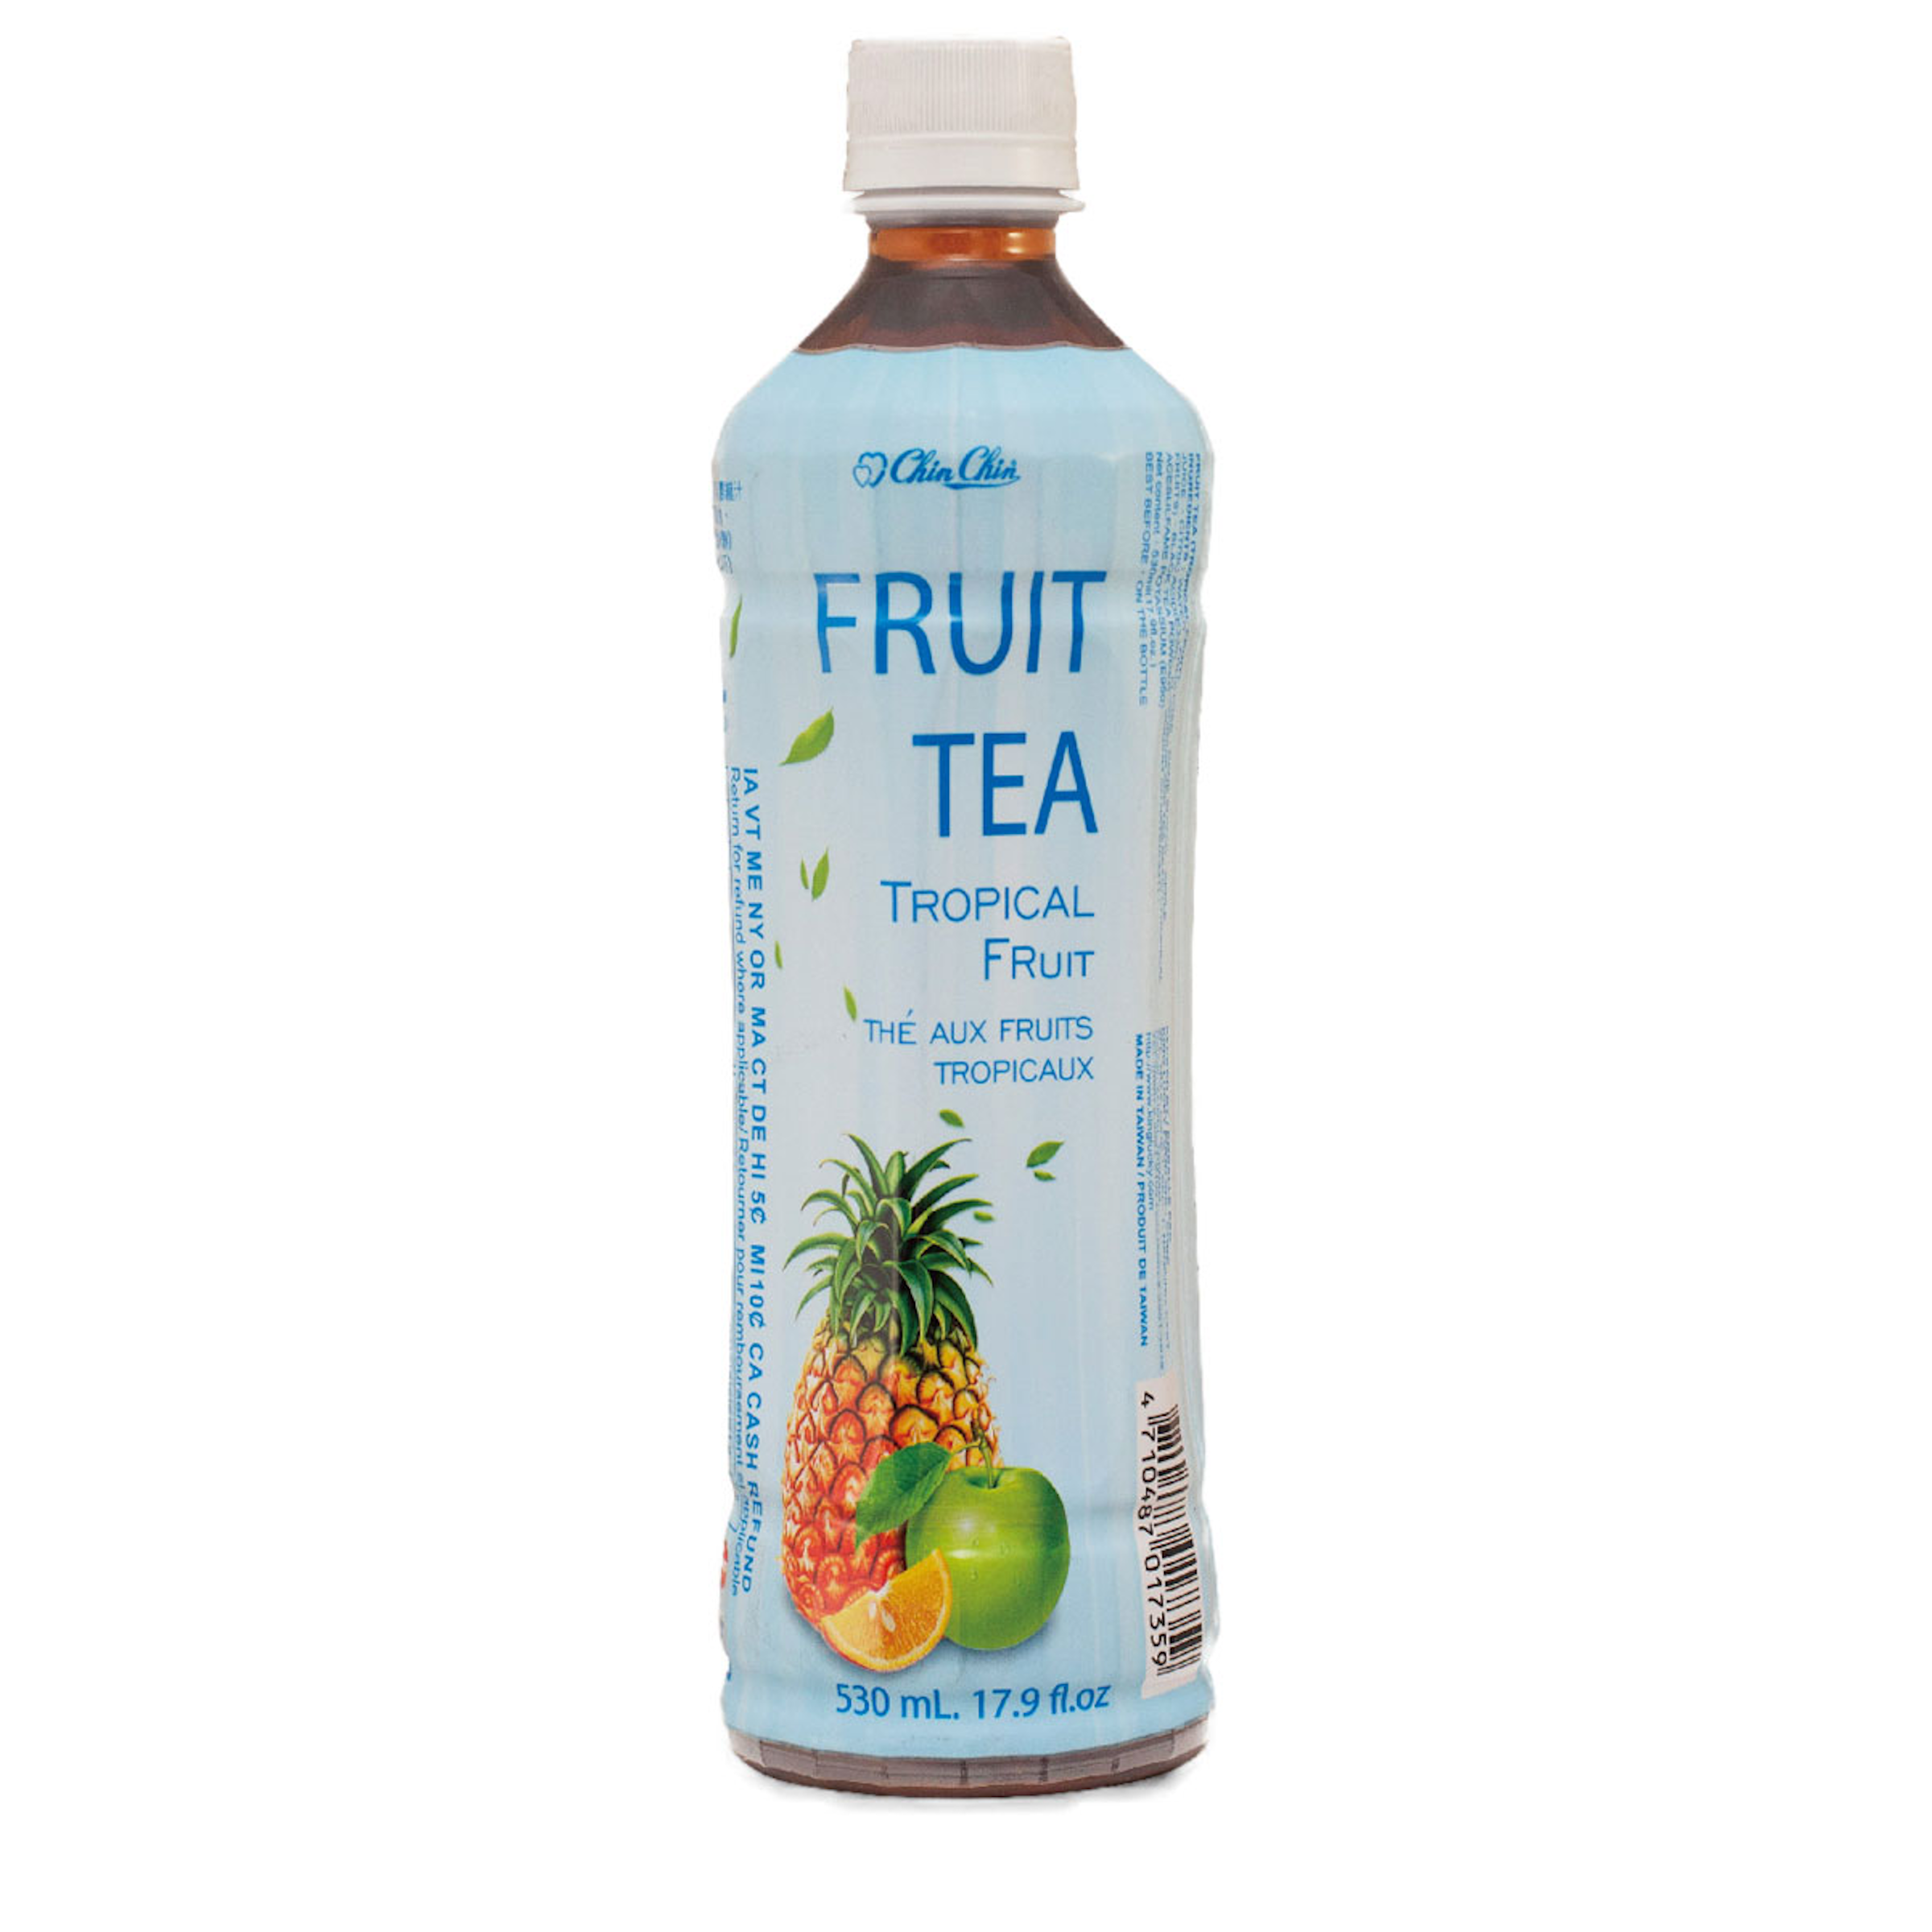 Chin Chin Fruit Tea – Tropical Fruit 530ml